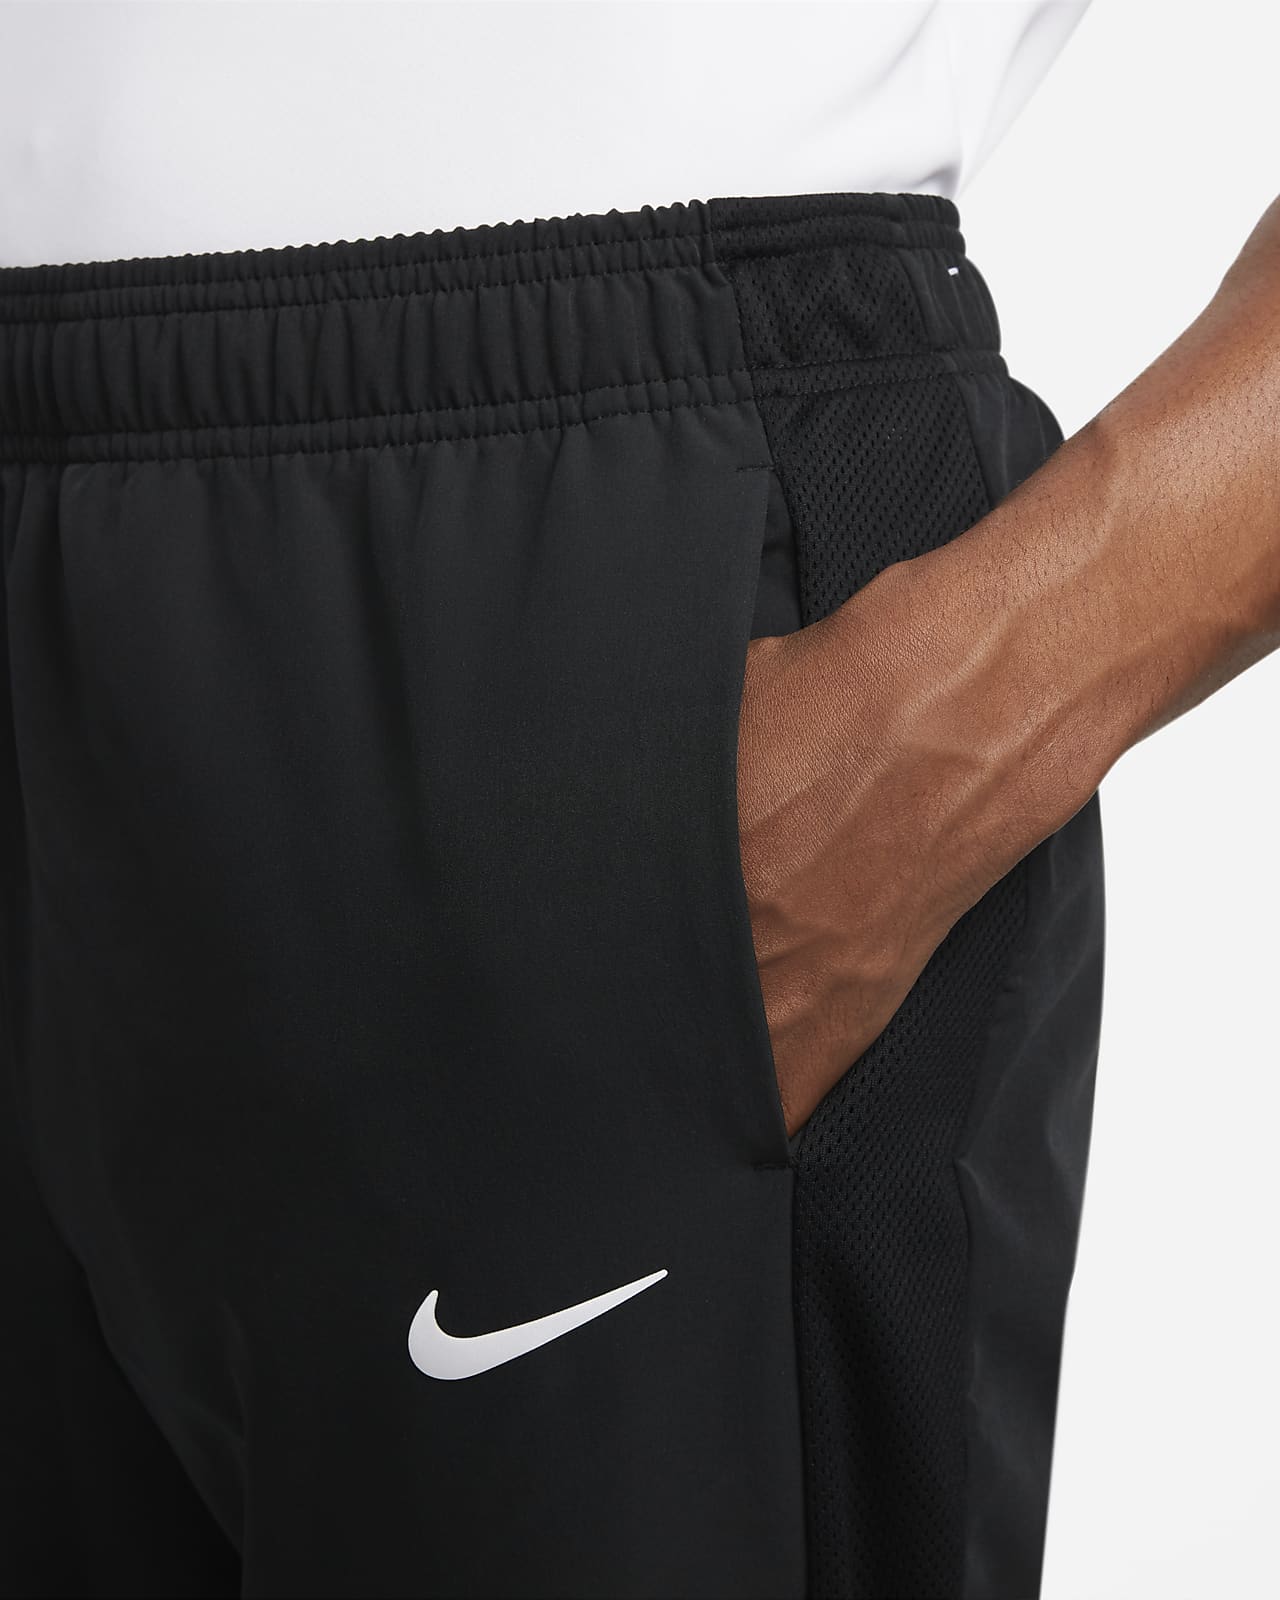 NikeCourt Advantage Men's Tennis Trousers. Nike CZ